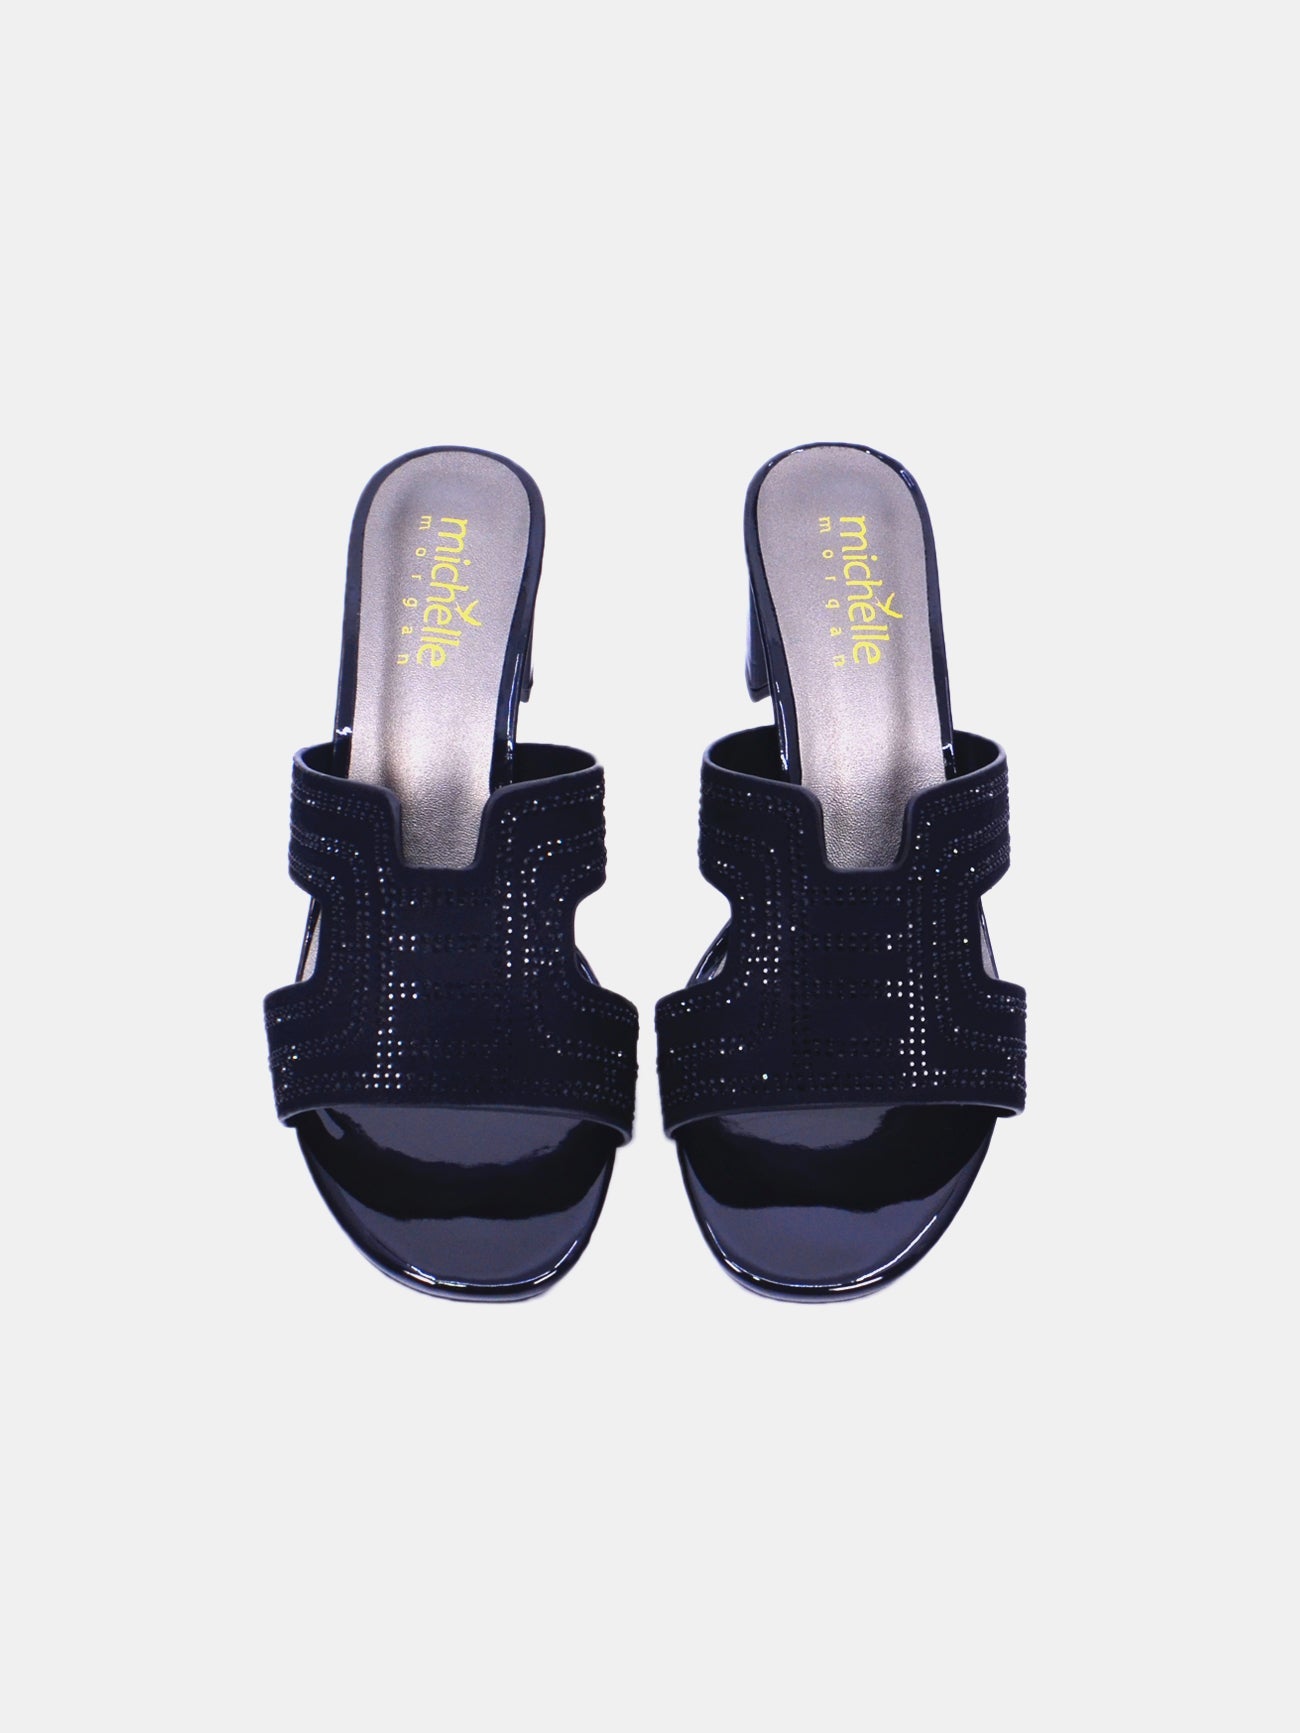 Michelle Morgan 314RJ19A Women's Heeled Sandals #color_Black